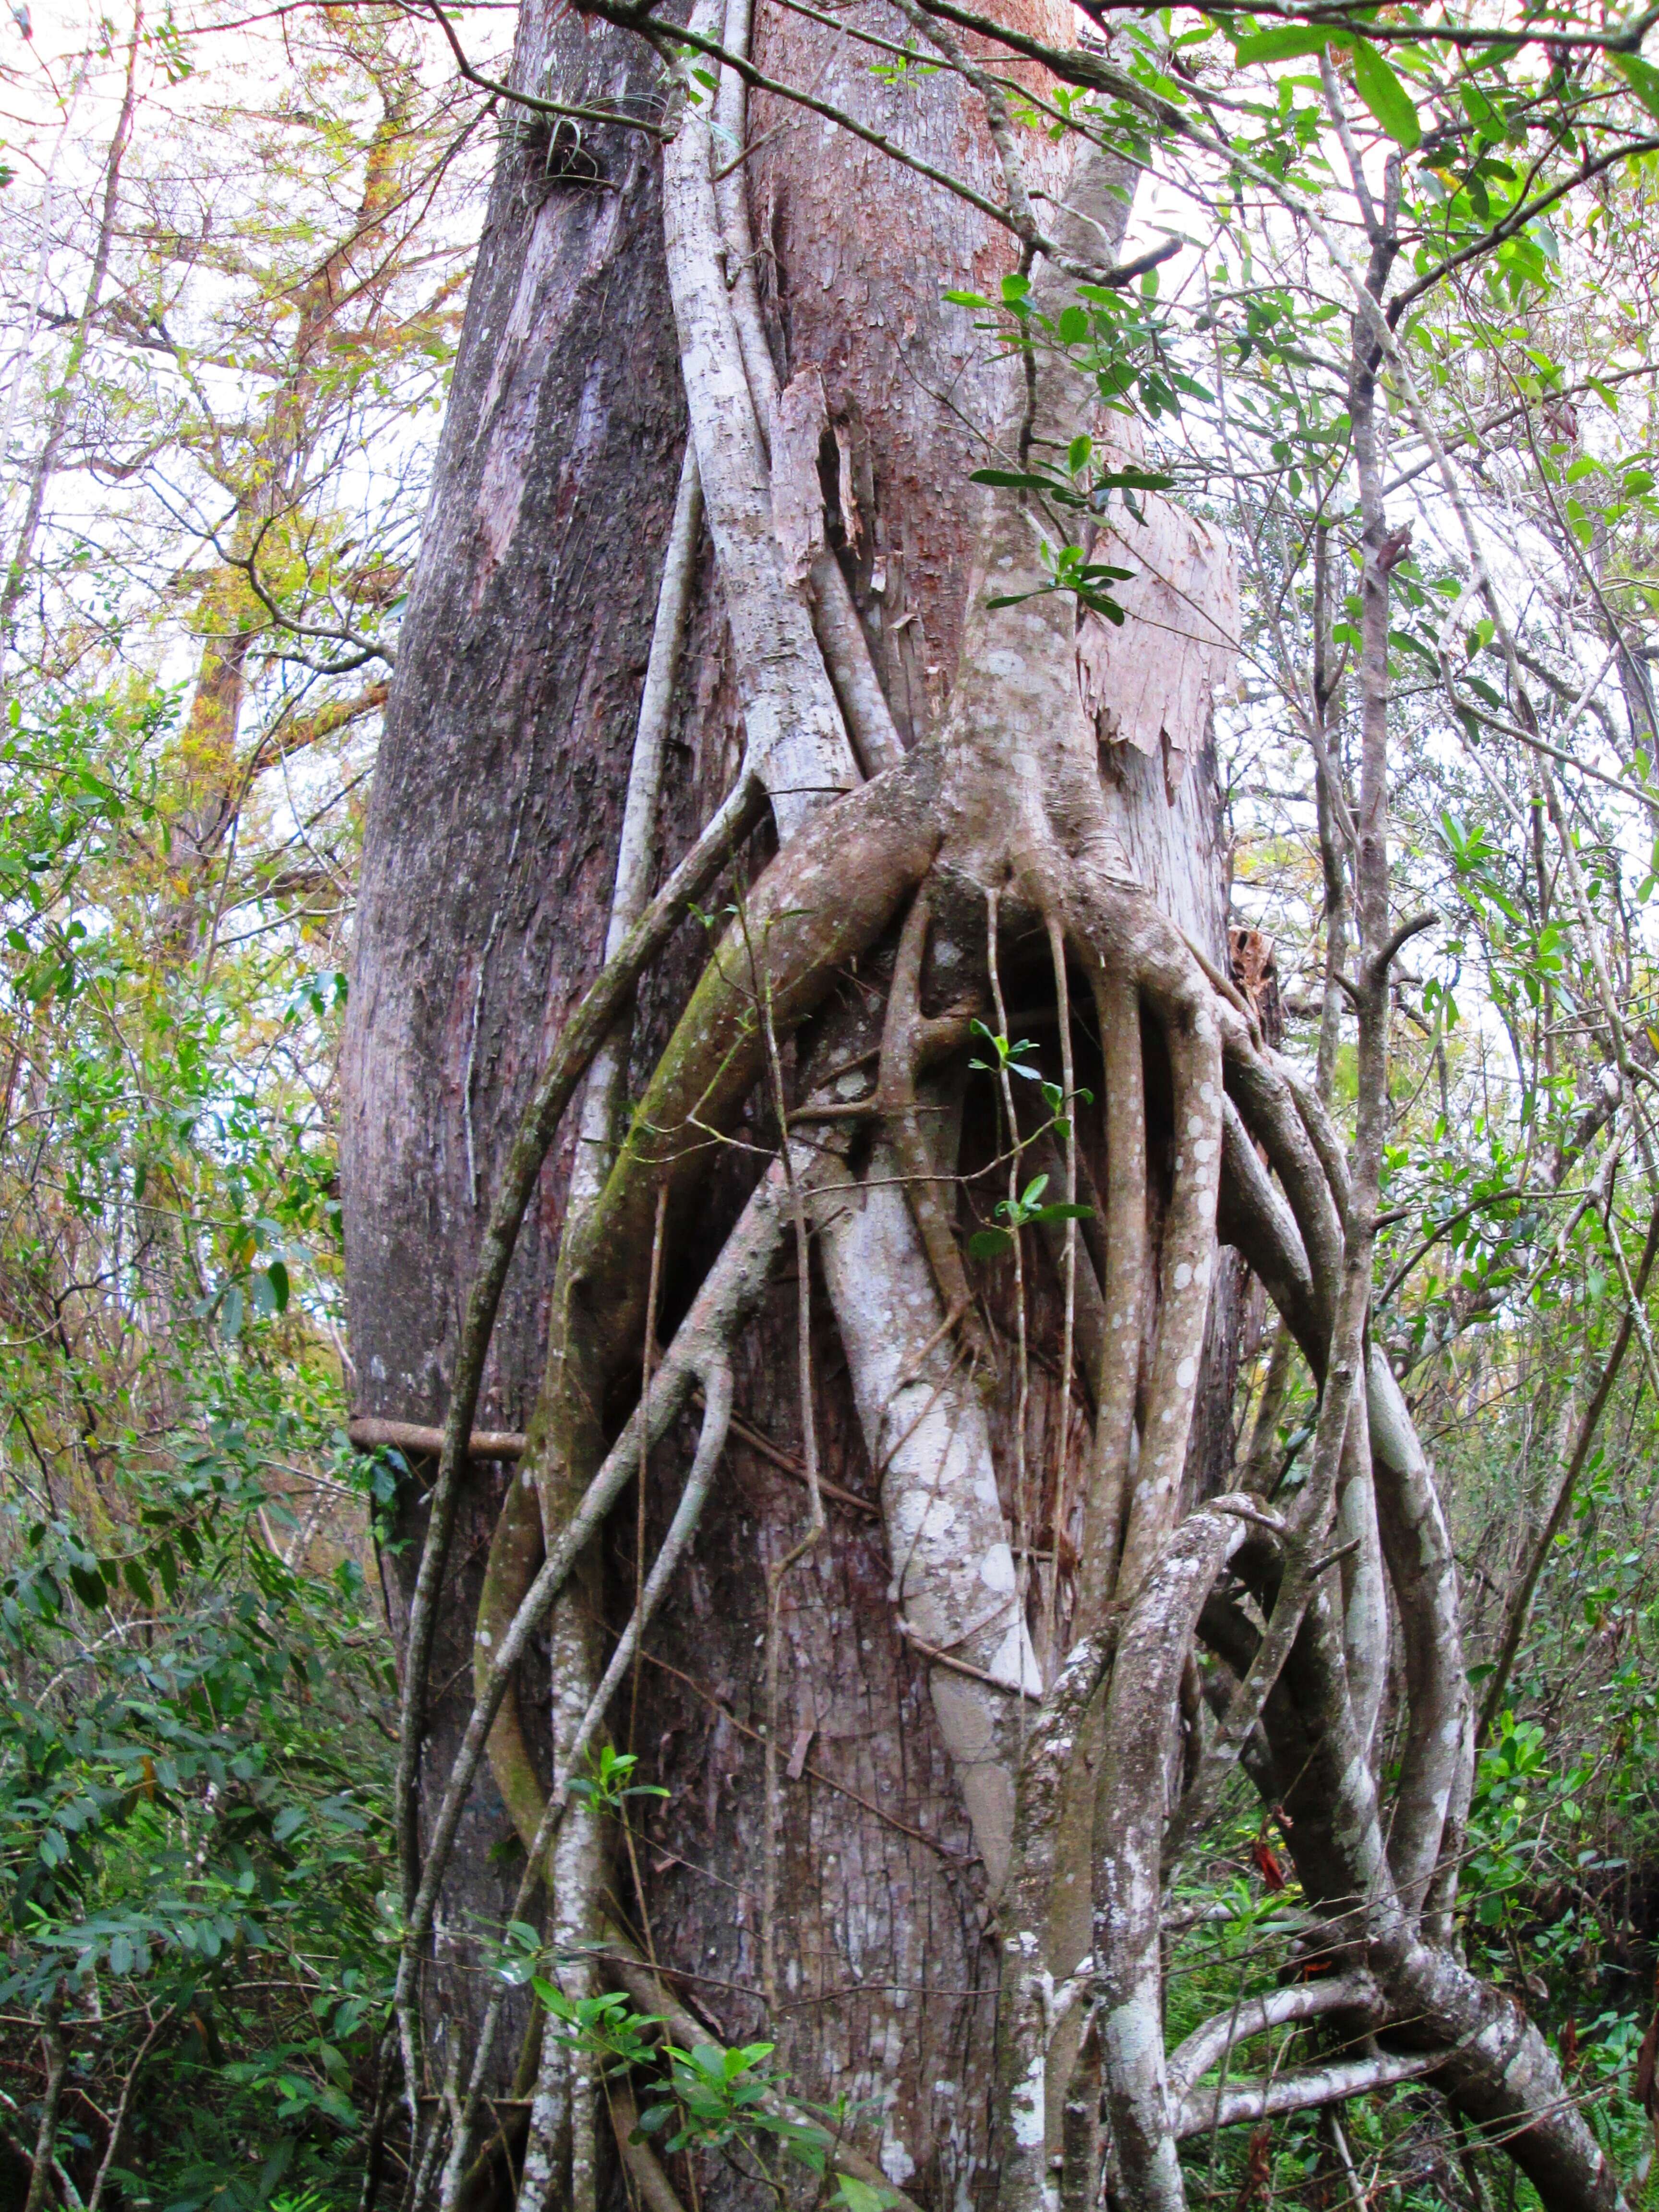 Image of Florida strangler fig